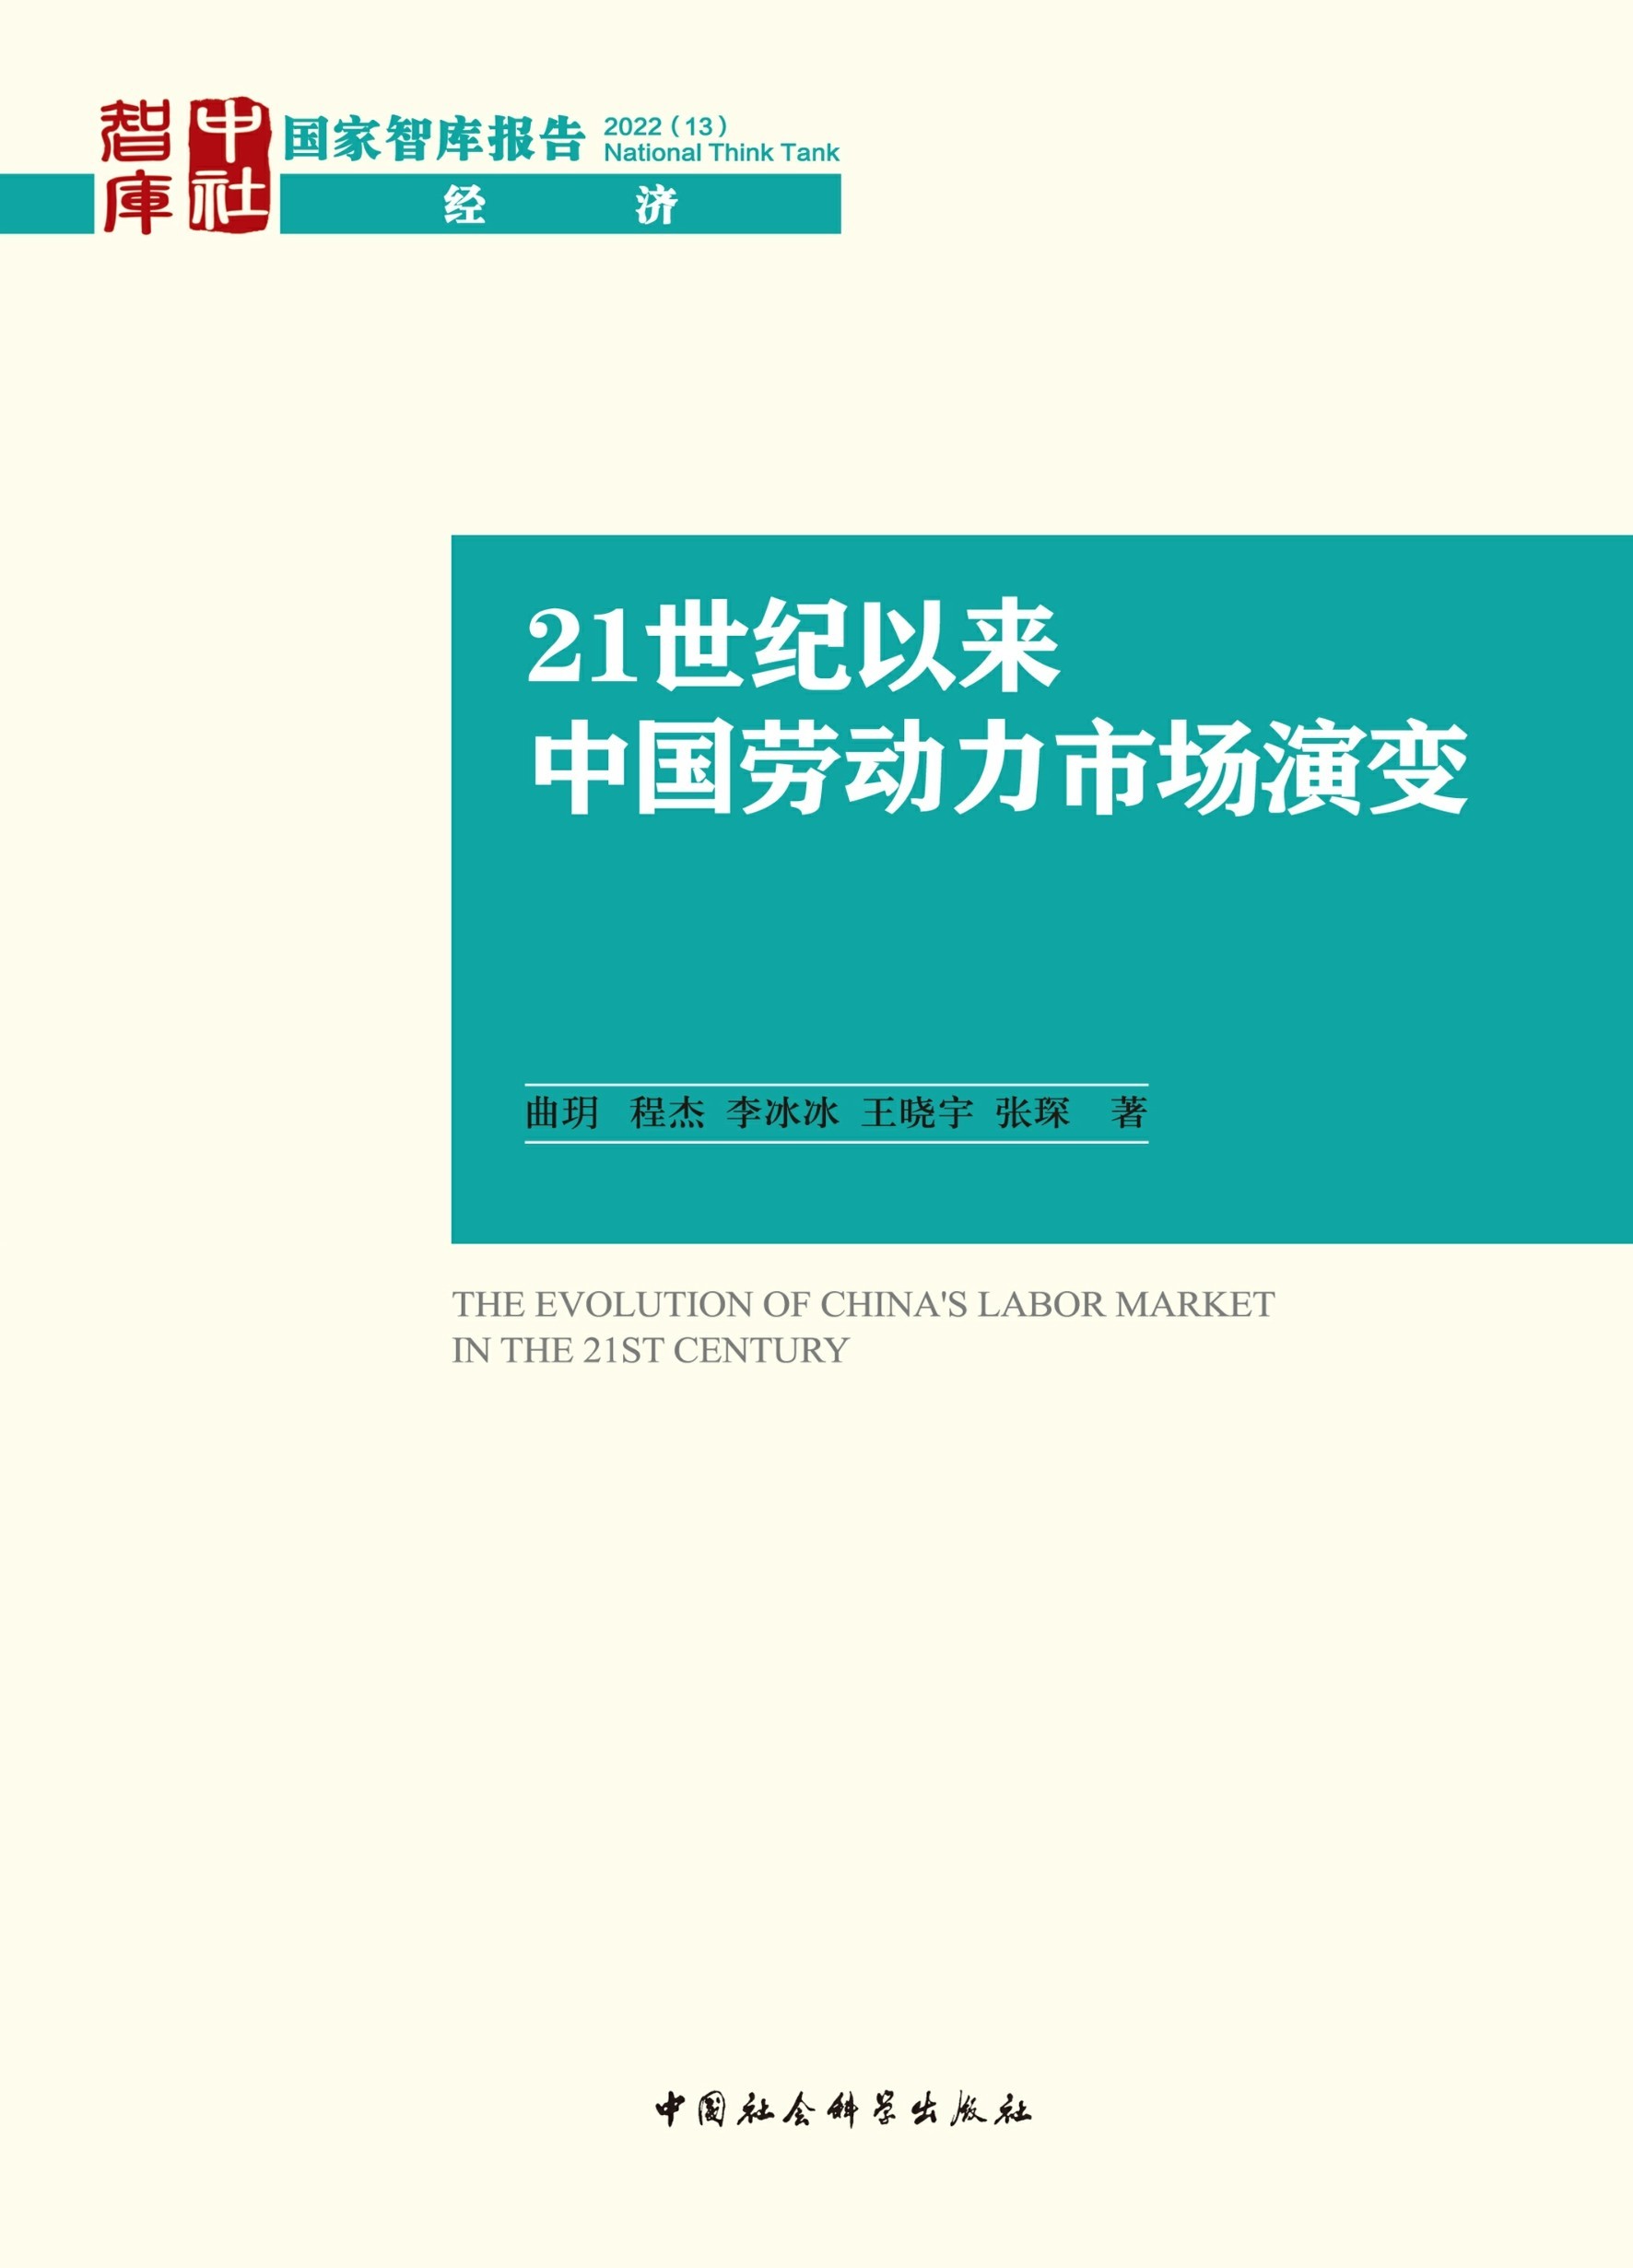 曲玥等：21世纪以来中国劳动力市场演变